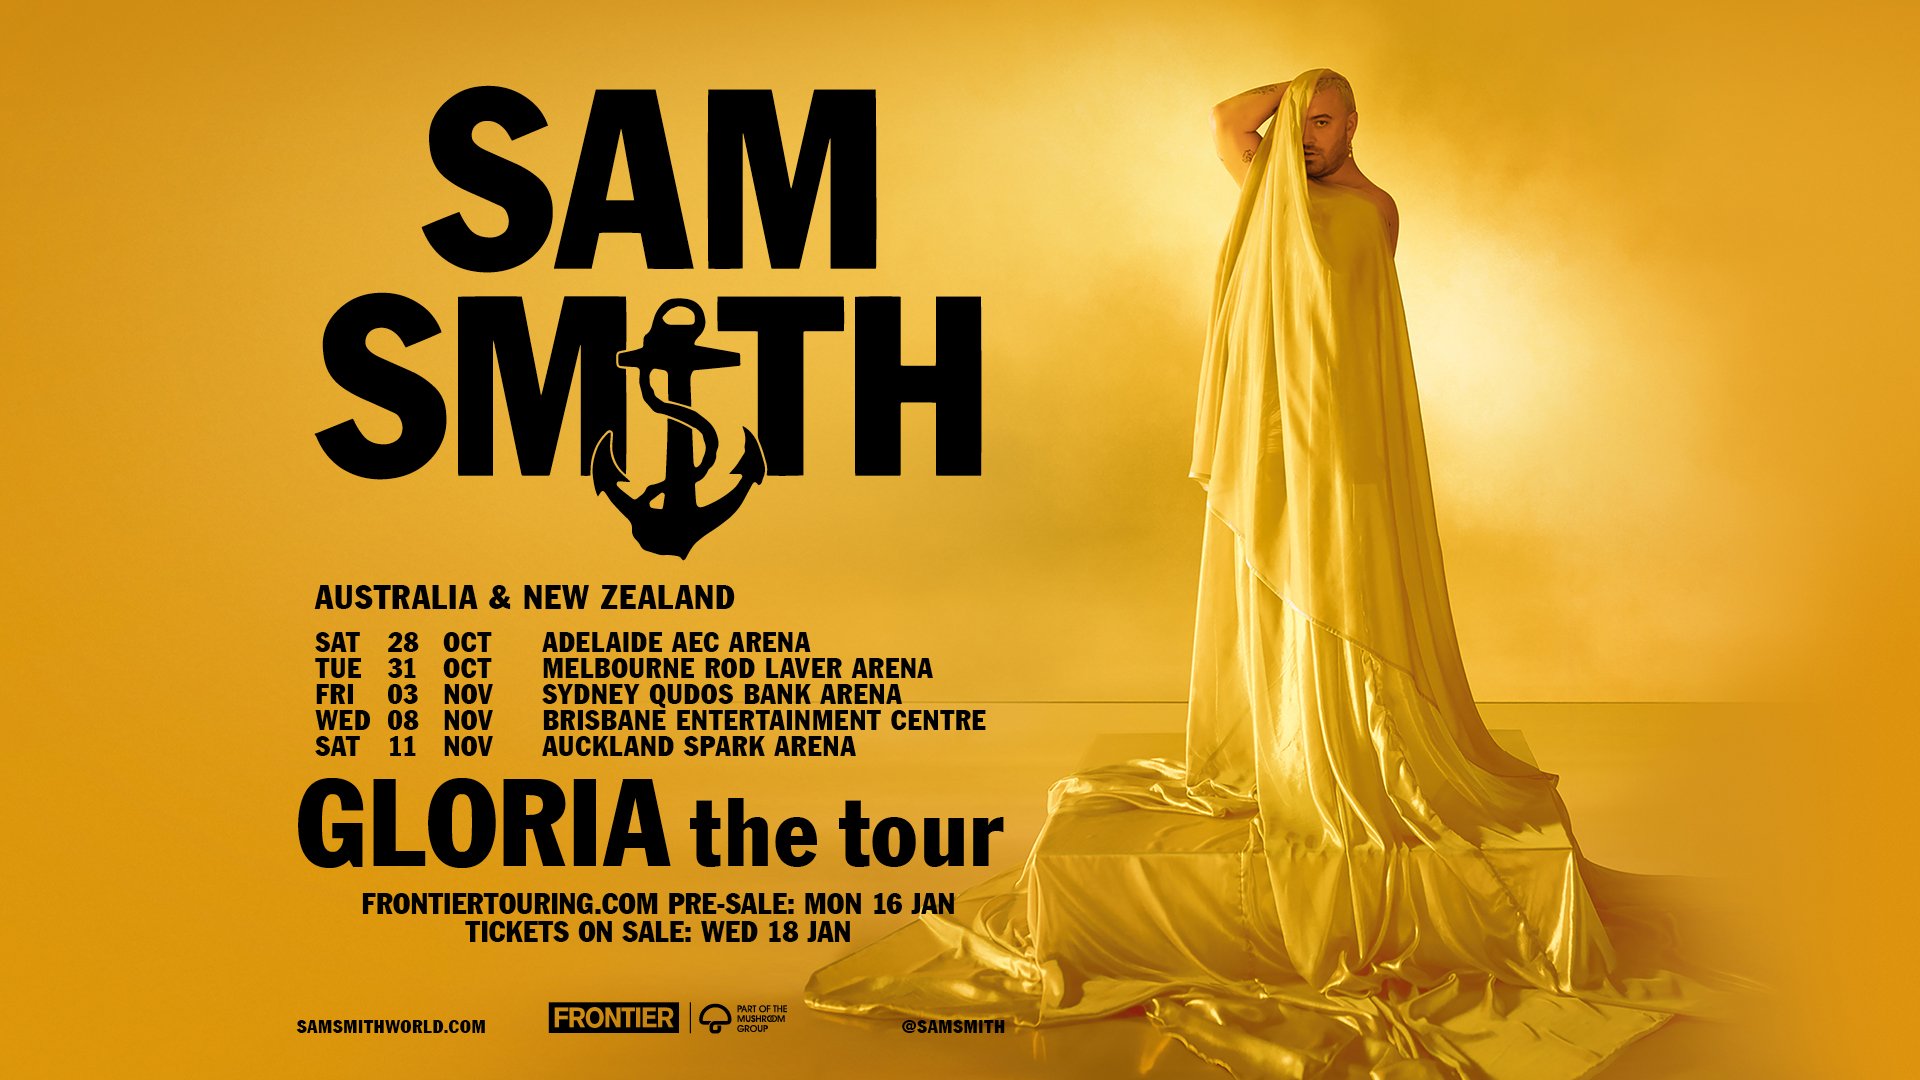 Ditch This Magazine - Sam Smith (UK) announces 'GLORIA the tour'